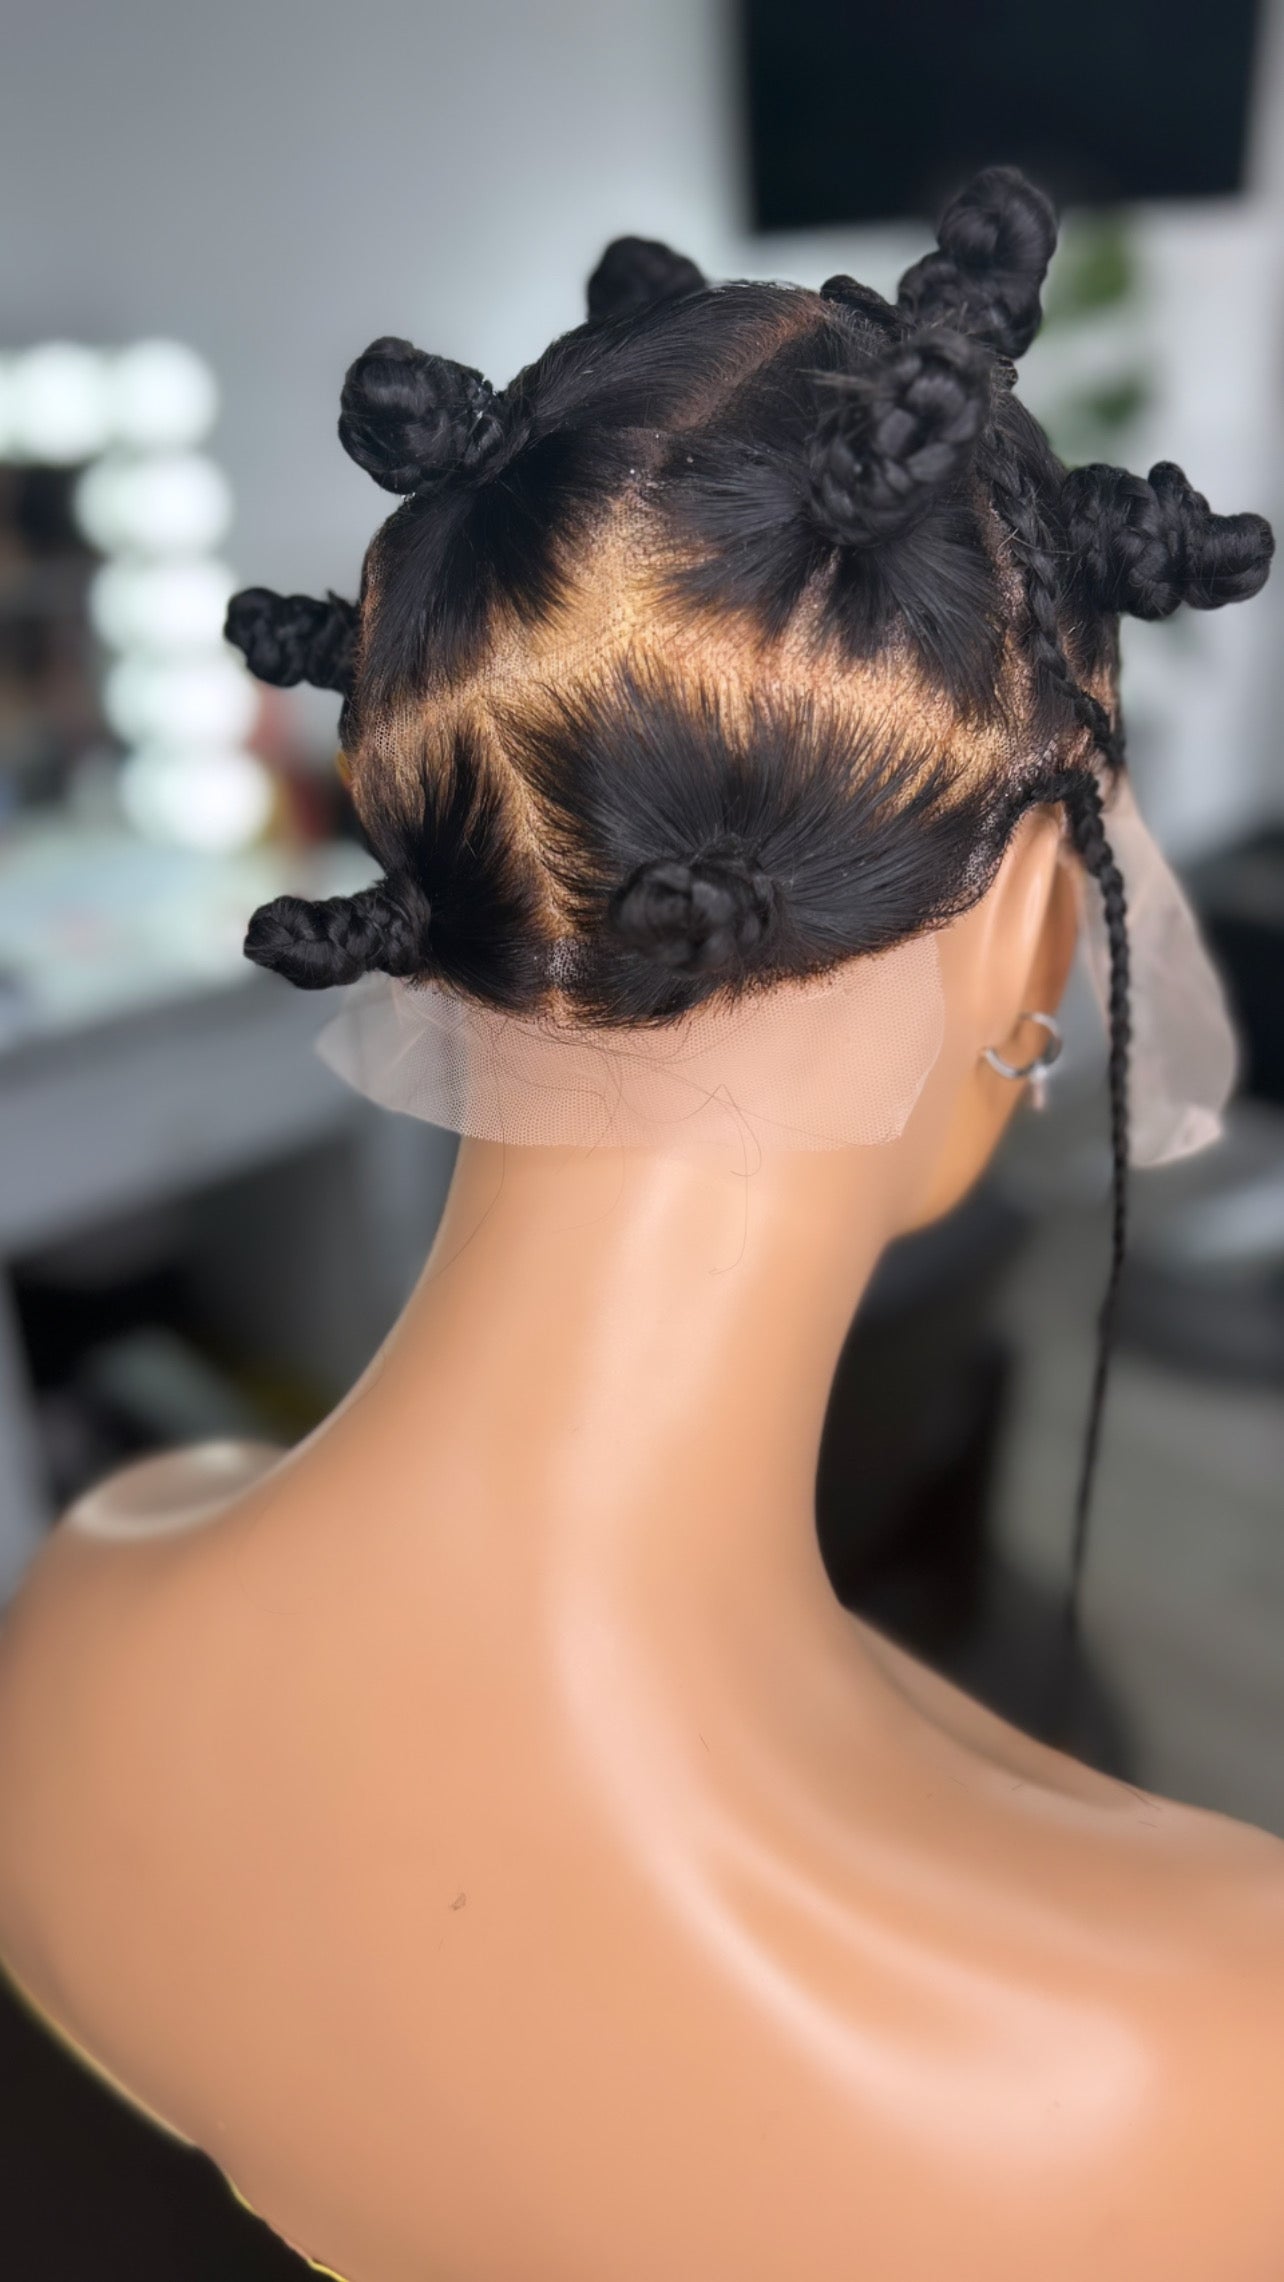 Jmkshair Virgin Hair Wig - Korra Bantu knots virgin hair full lace-JMK Hair & Braided Wigs-